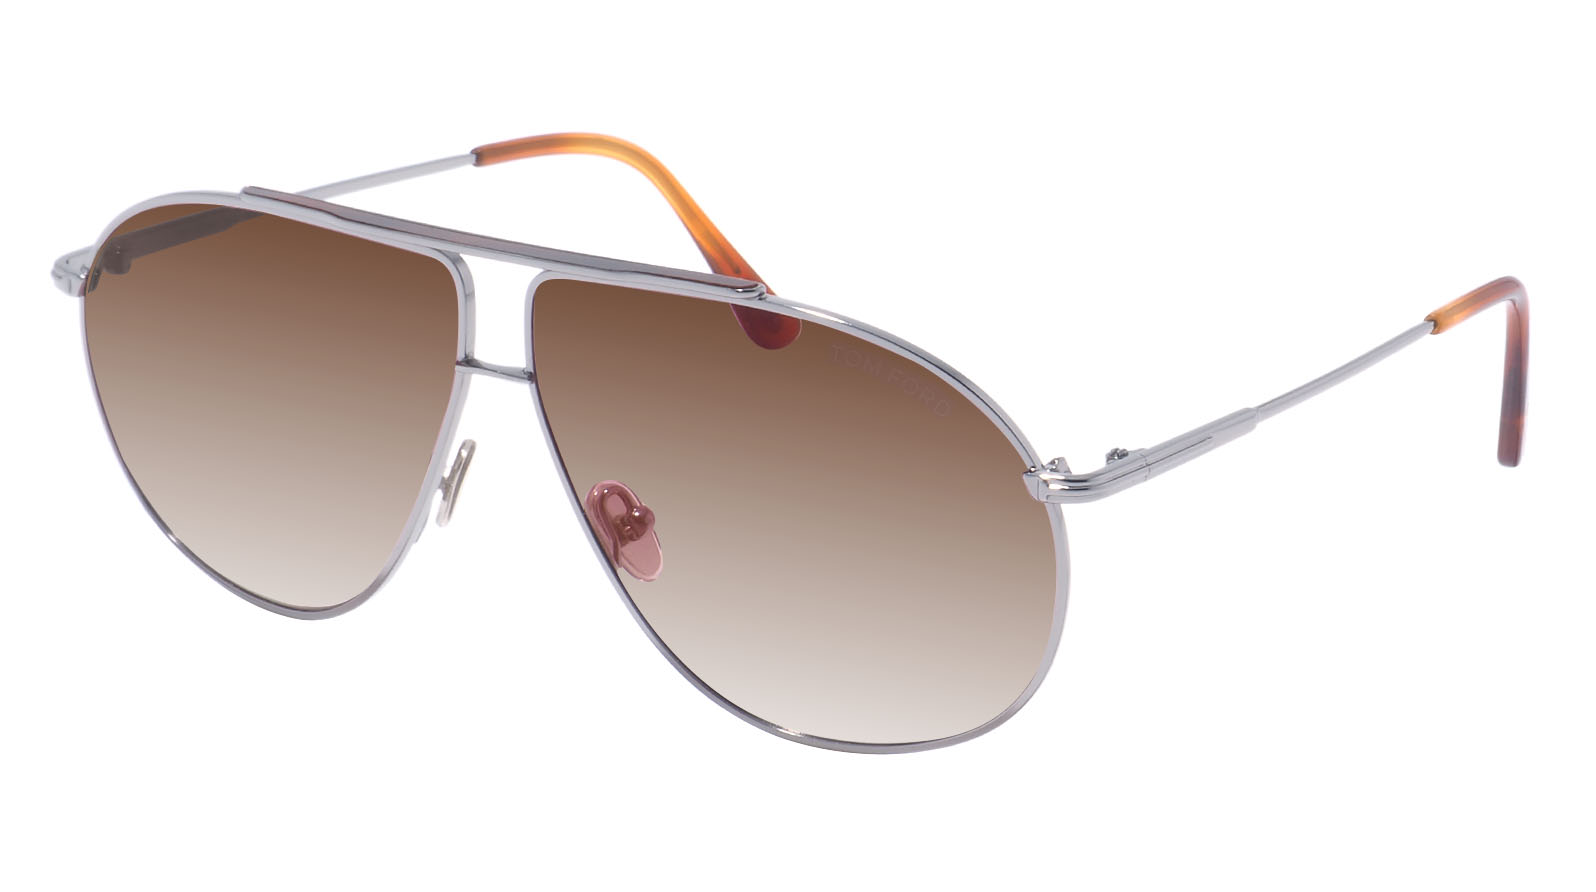 Tom Ford Riley-02 825 14G мужские поляризованные солнцезащитные очки солнцезащитные очки для рыбалки поляризованные очки с защитой от ультрафиолета